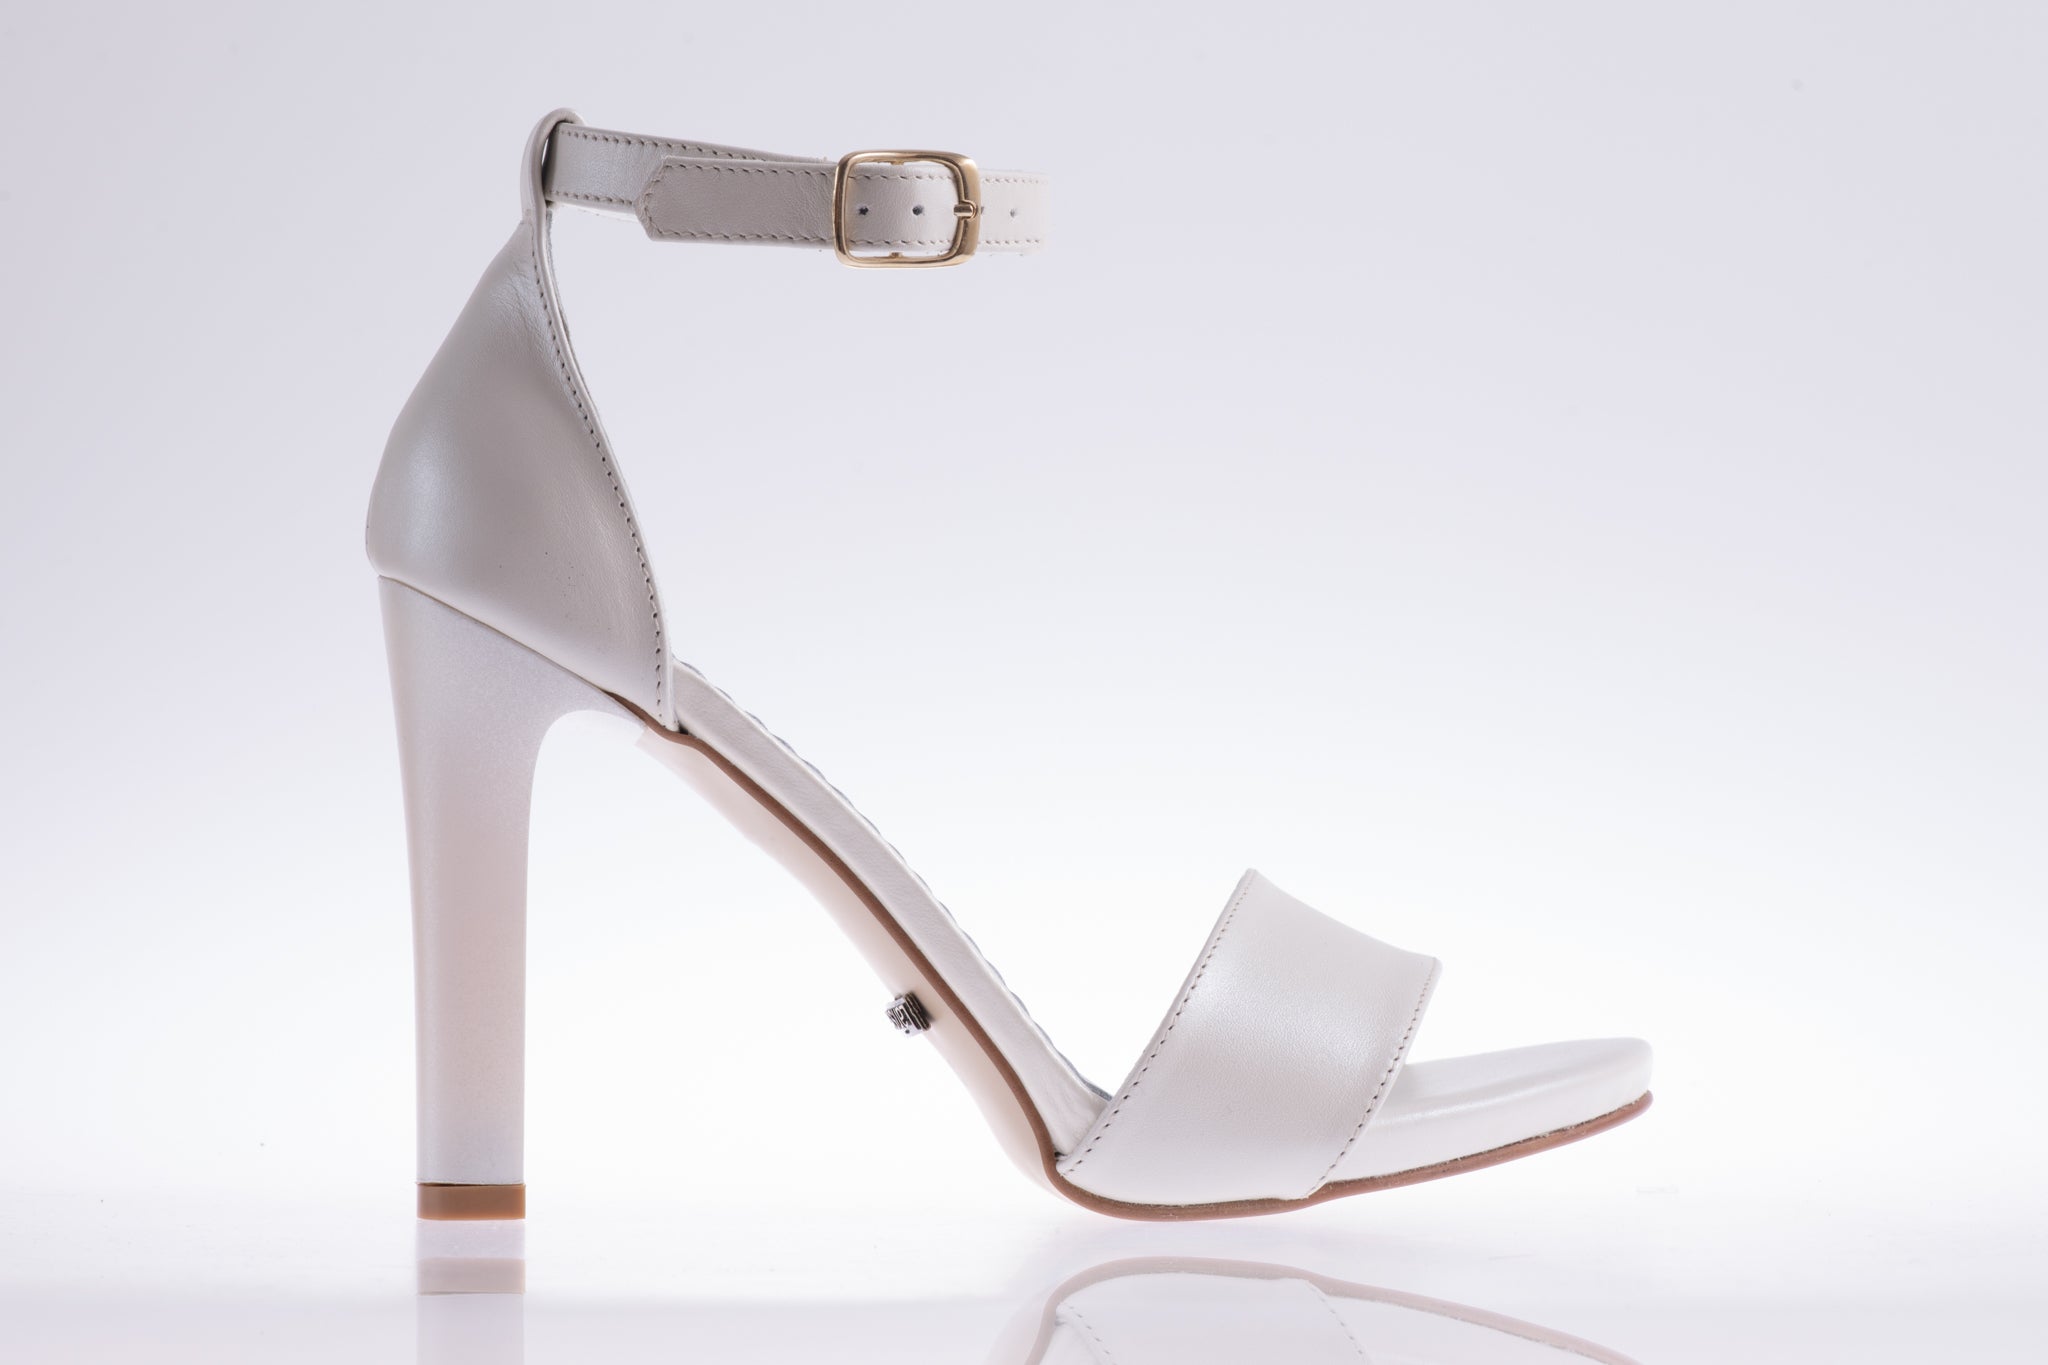 Sandale dama elegante piele naturala LARISA A44 crem sidef